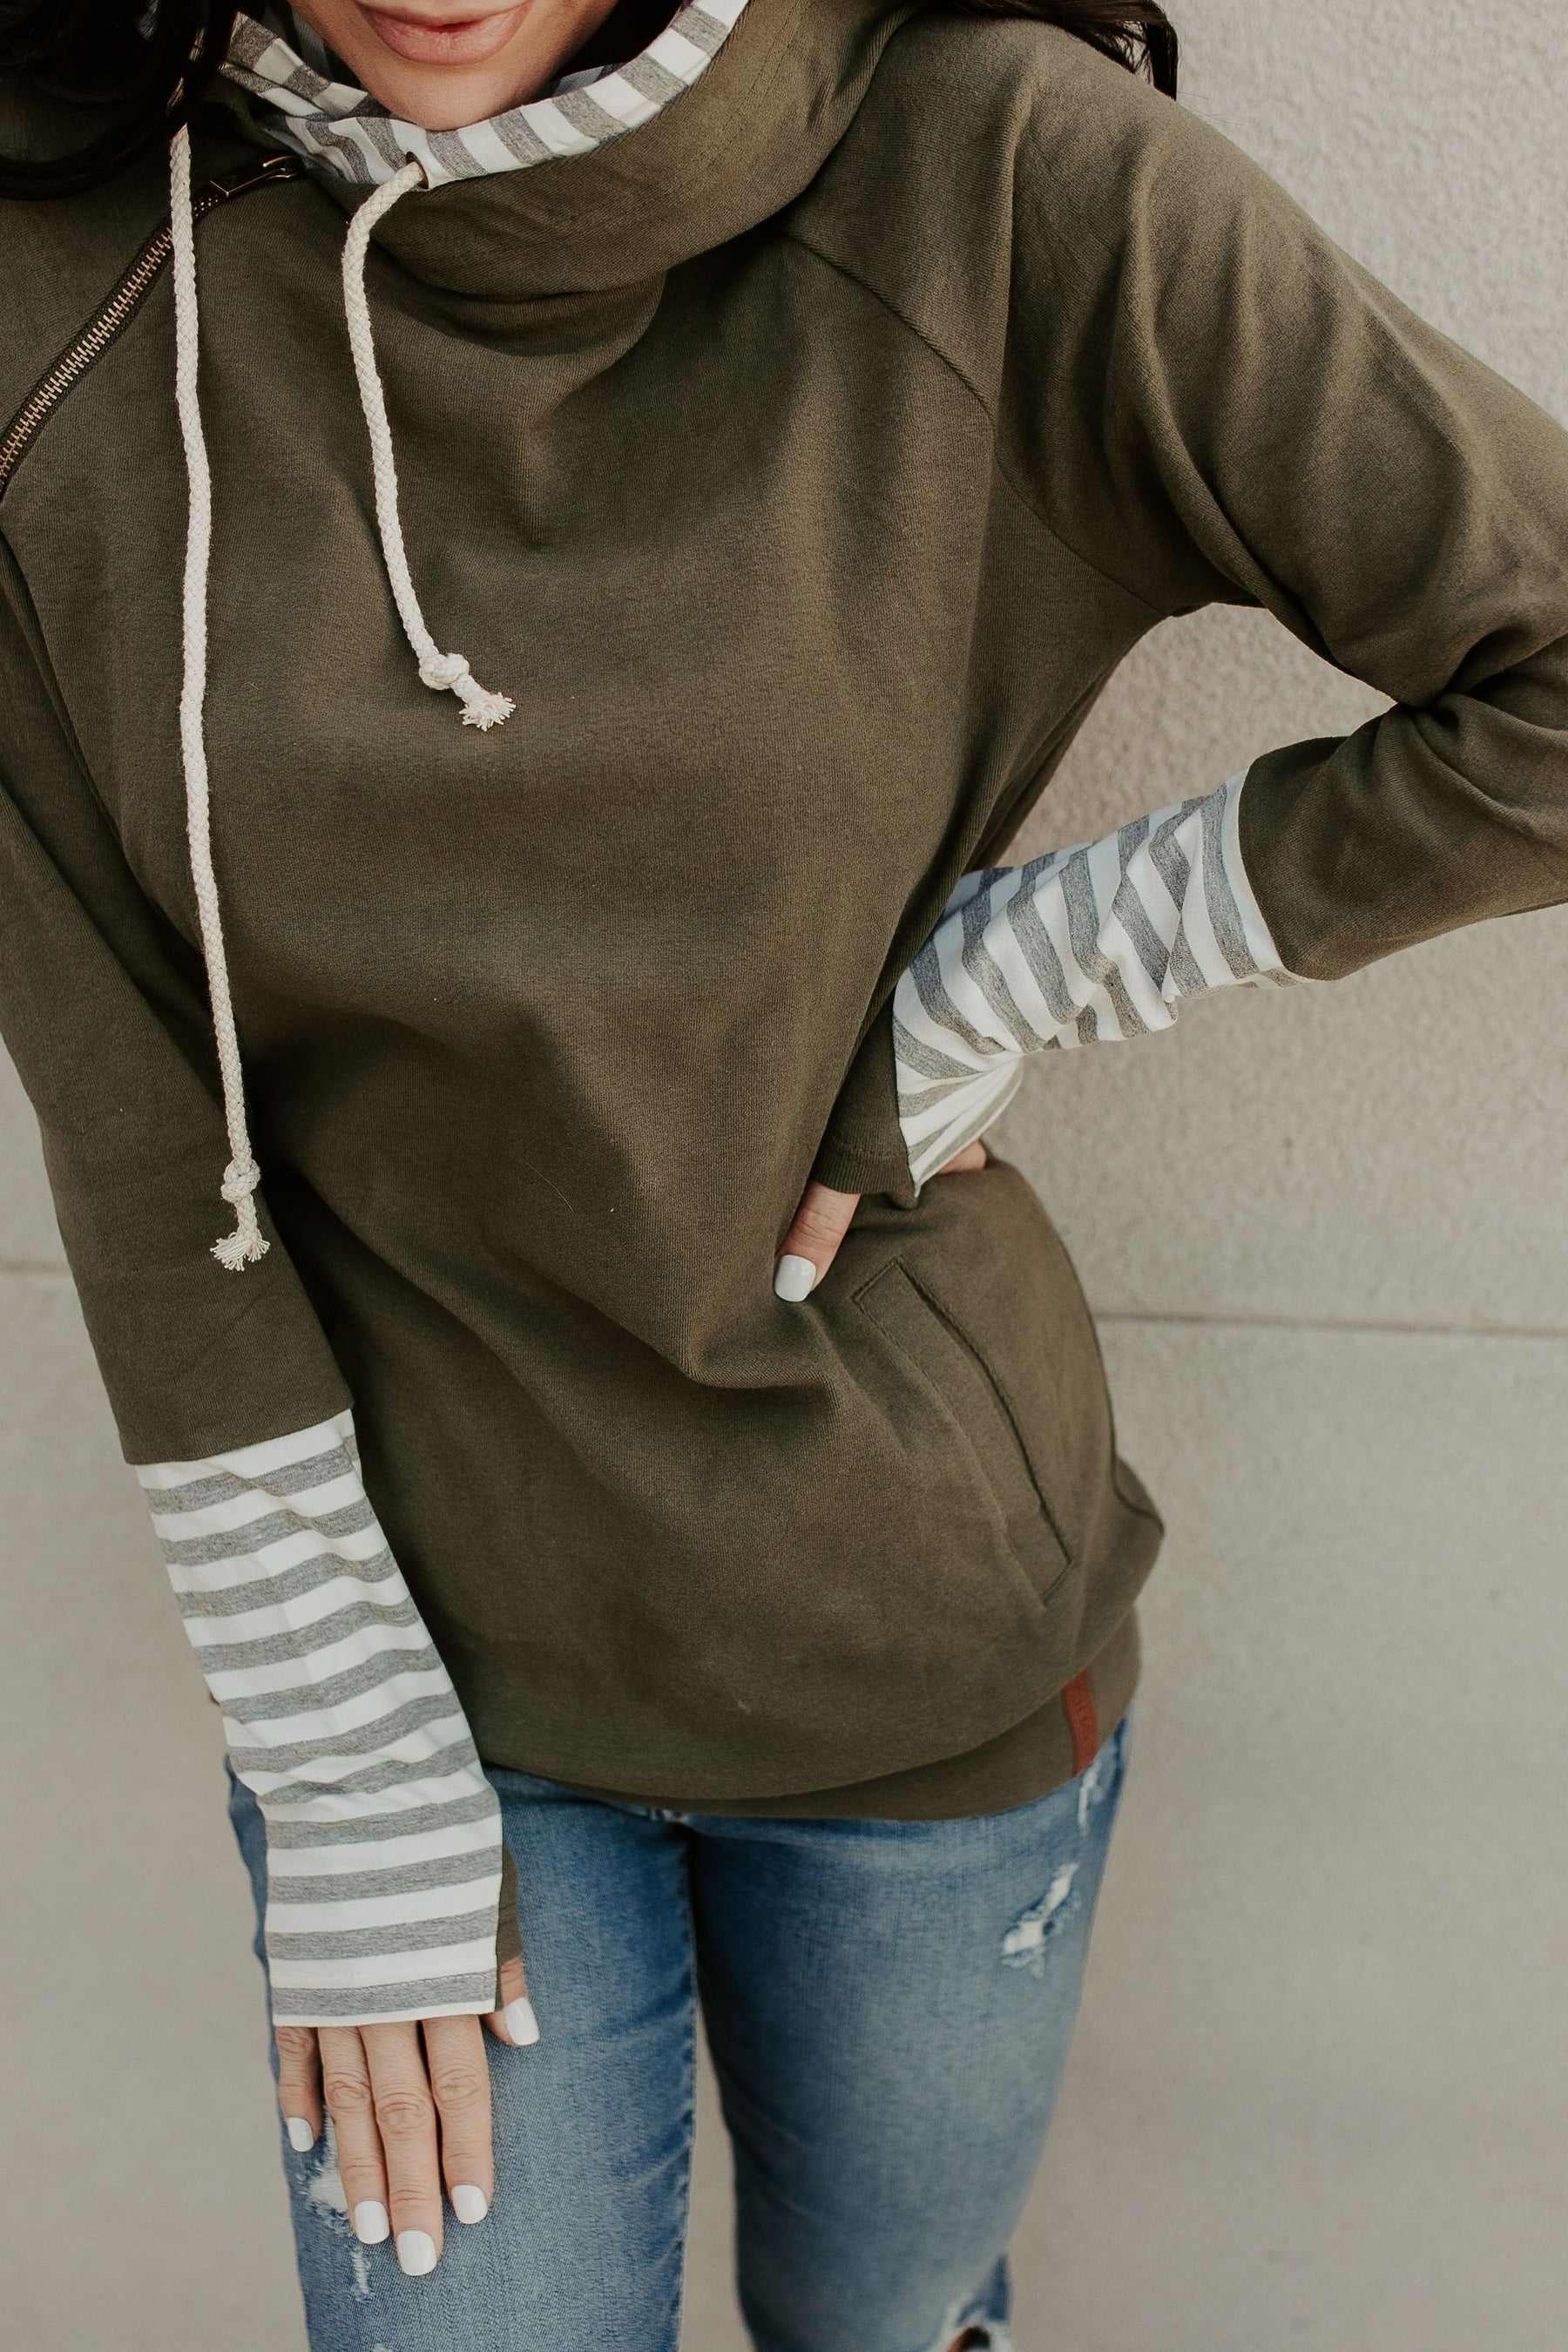 Ampersand Avenue Doublehood™ Sweatshirt - Between the Lines